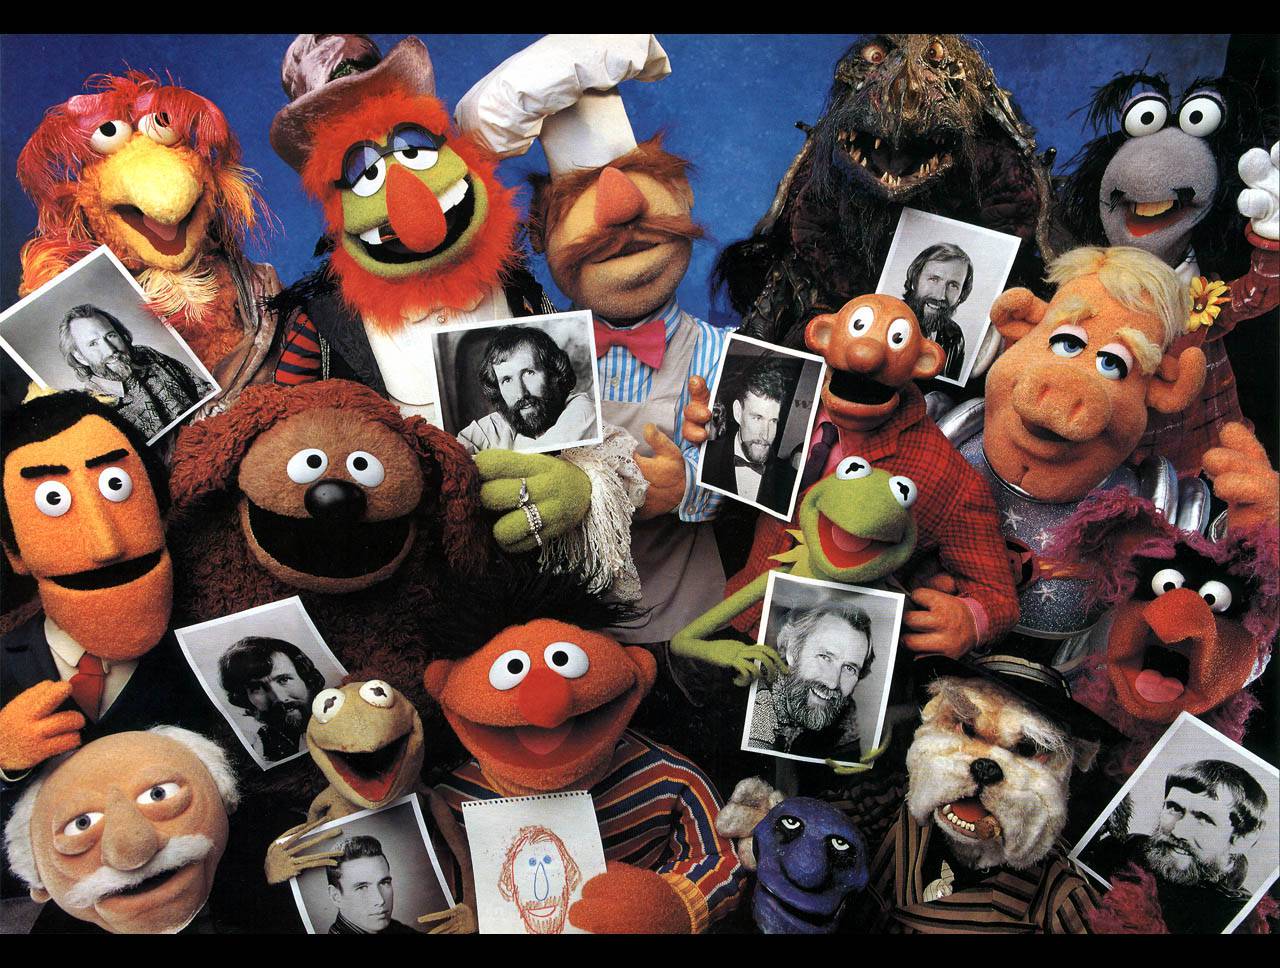 Muppets F503eb8042 Wallpaper Hq